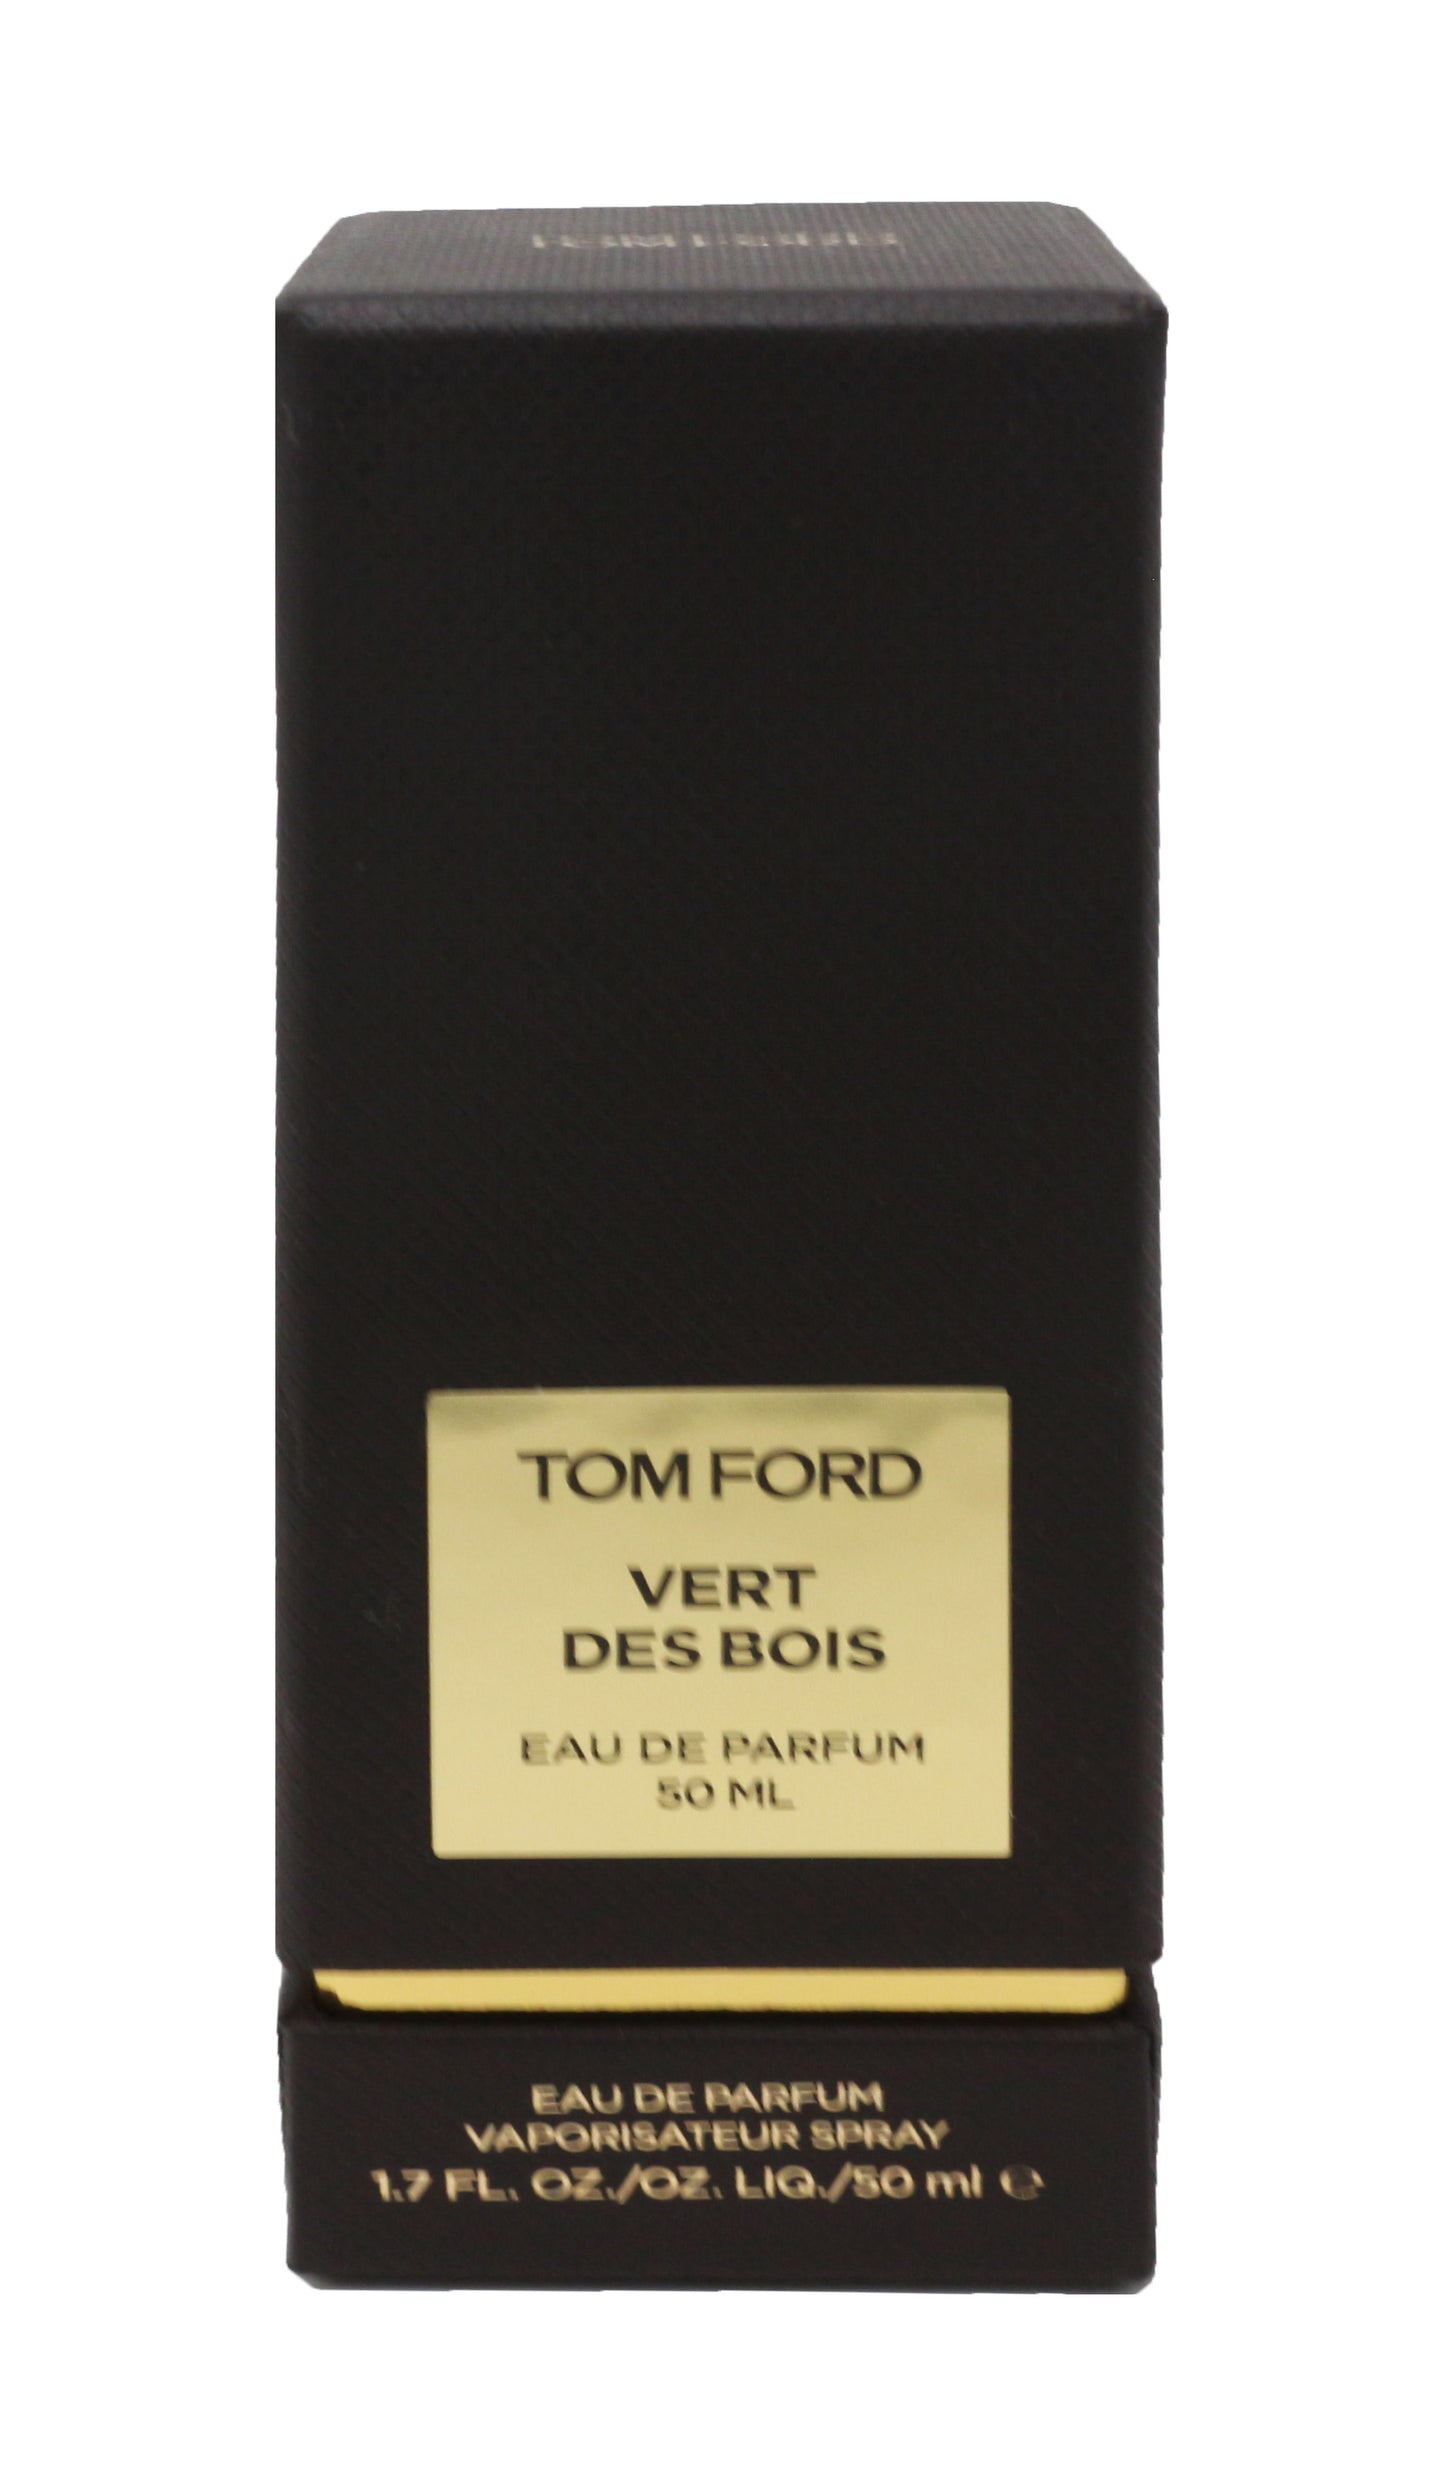 Tom Ford Vert Des Bois Eau De Parfum 1.7oz/50ml New In Box (No Cellophane)